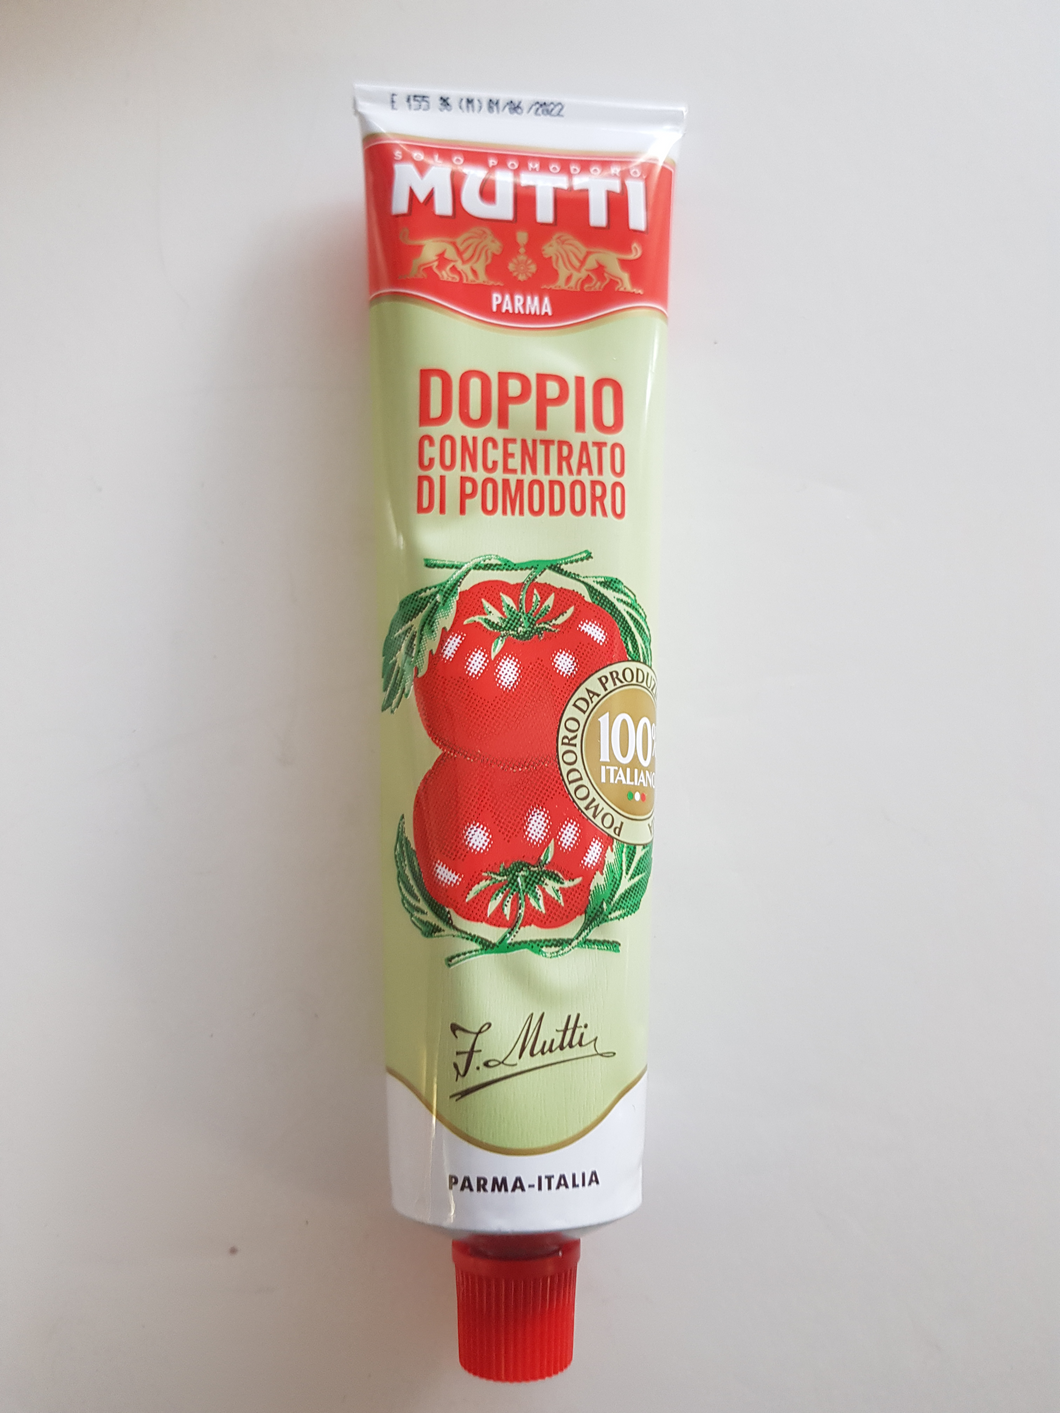 Mutti - Tomato Paste